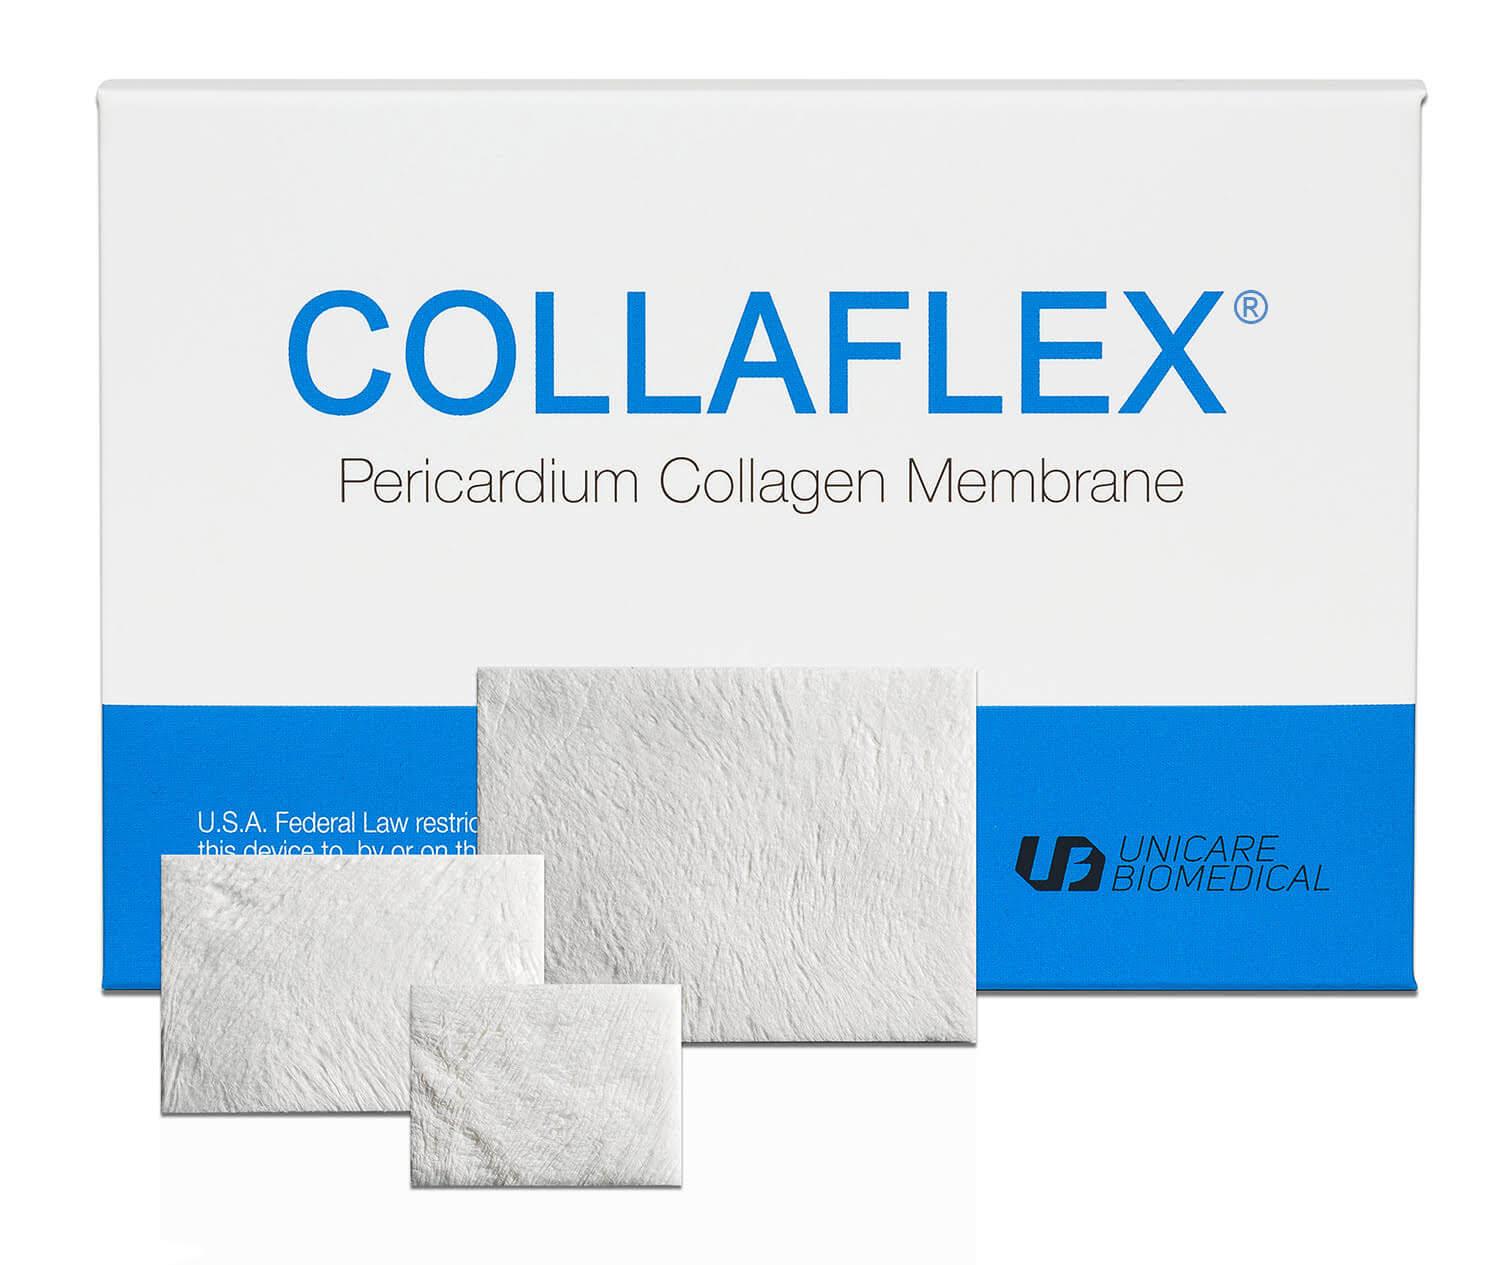 CollaFlex packaging, pericardium collagen membrane.